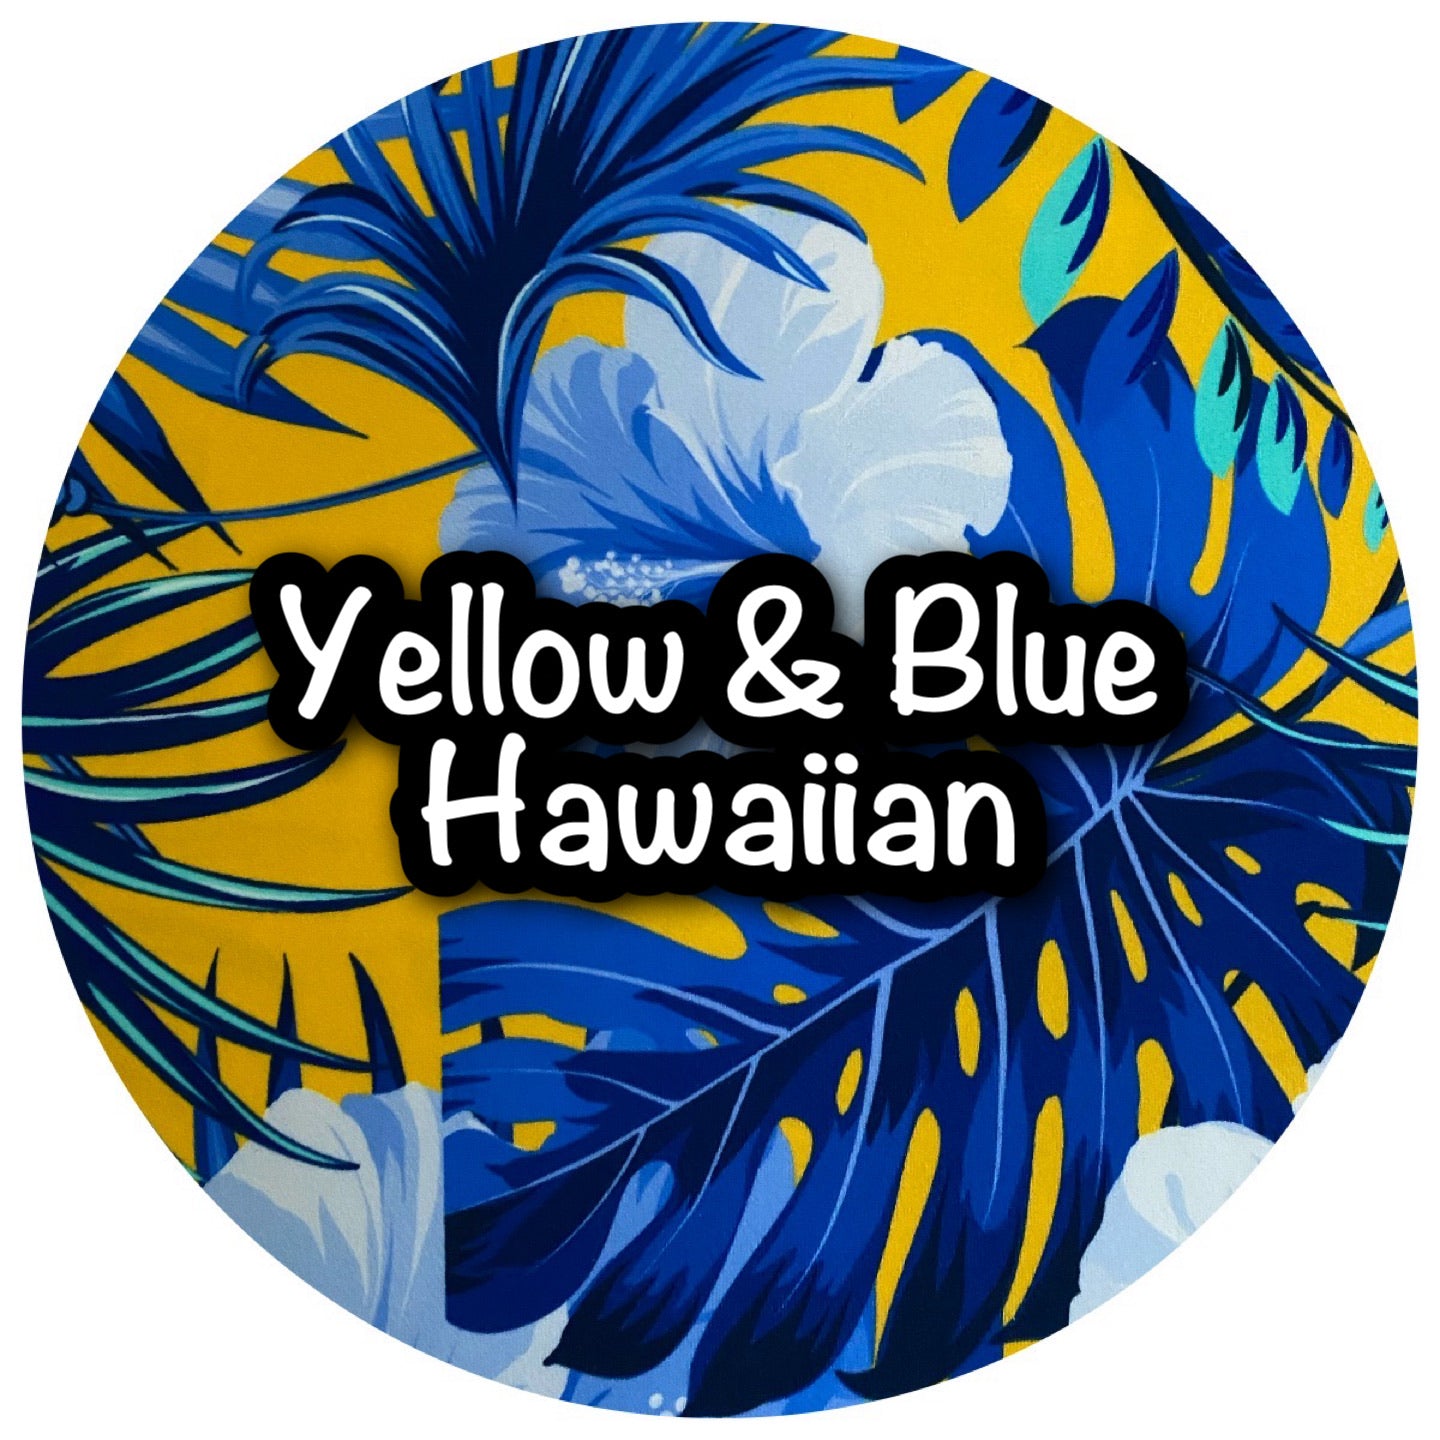 Yellow & Blue Hawaiian